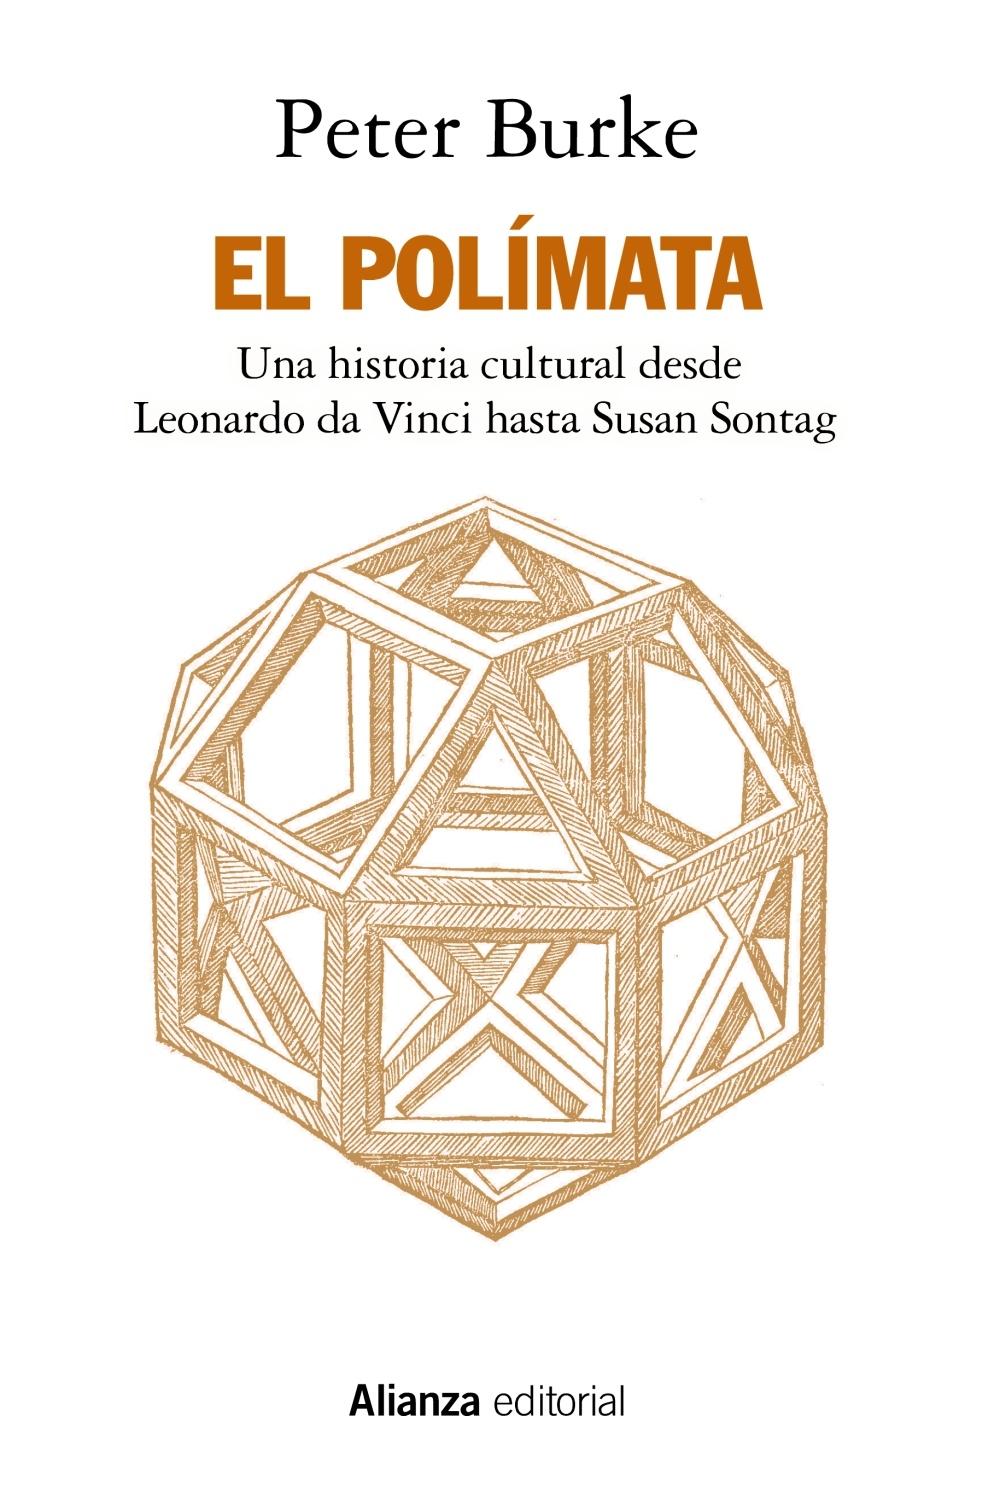 El Polímata "Una Historia Cultural desde Leonardo Da Vinci hasta Susan Sontag"